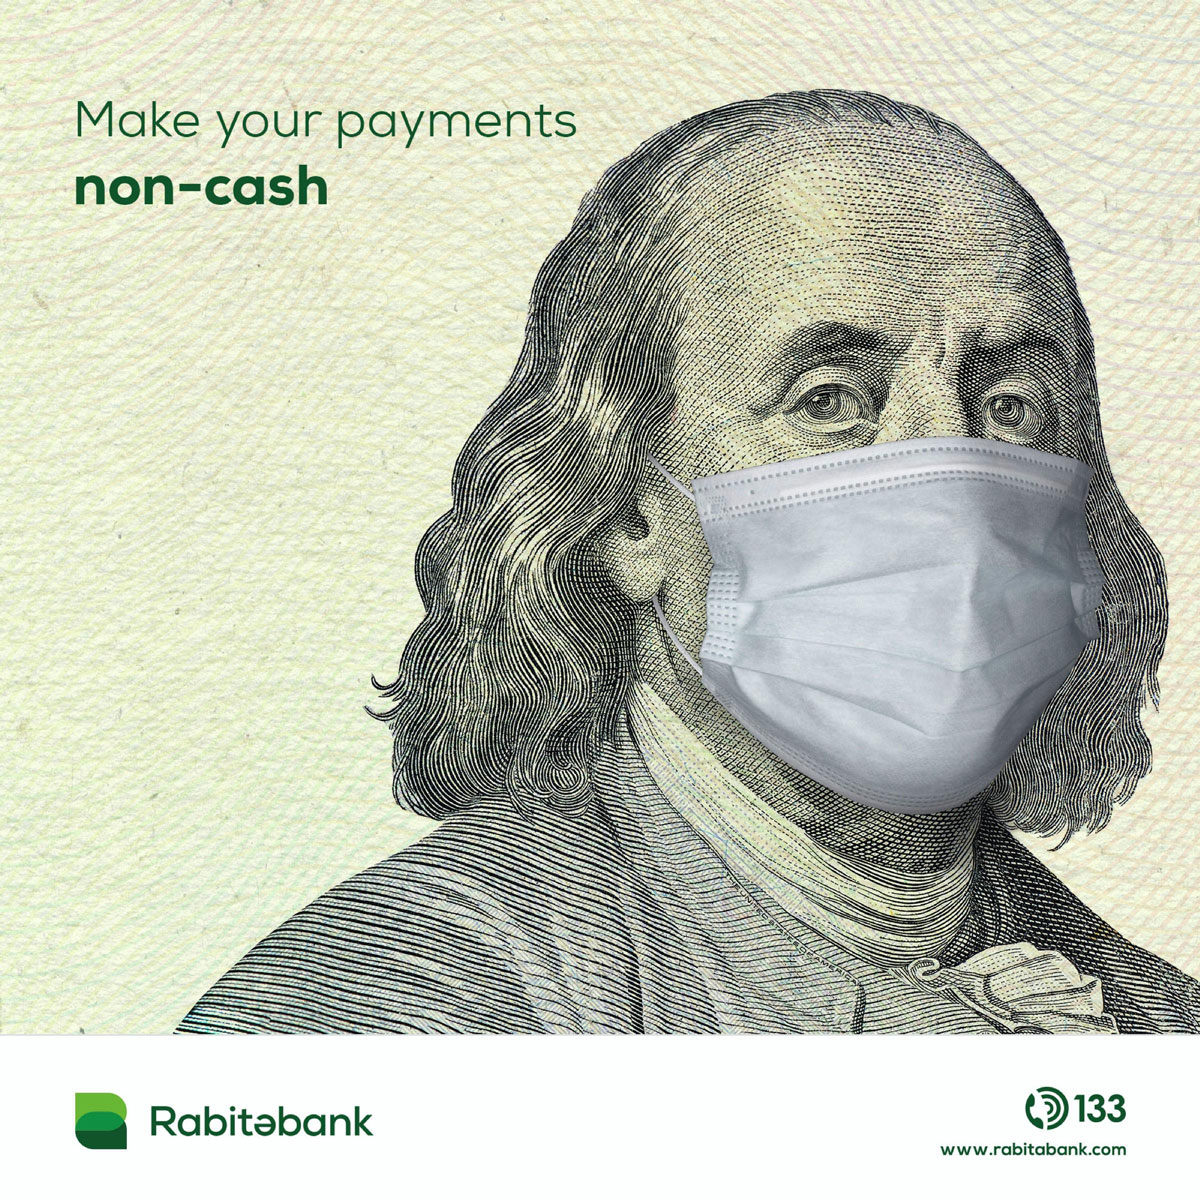 Rabitabank - Azerbijan Covid creative non-cash ad